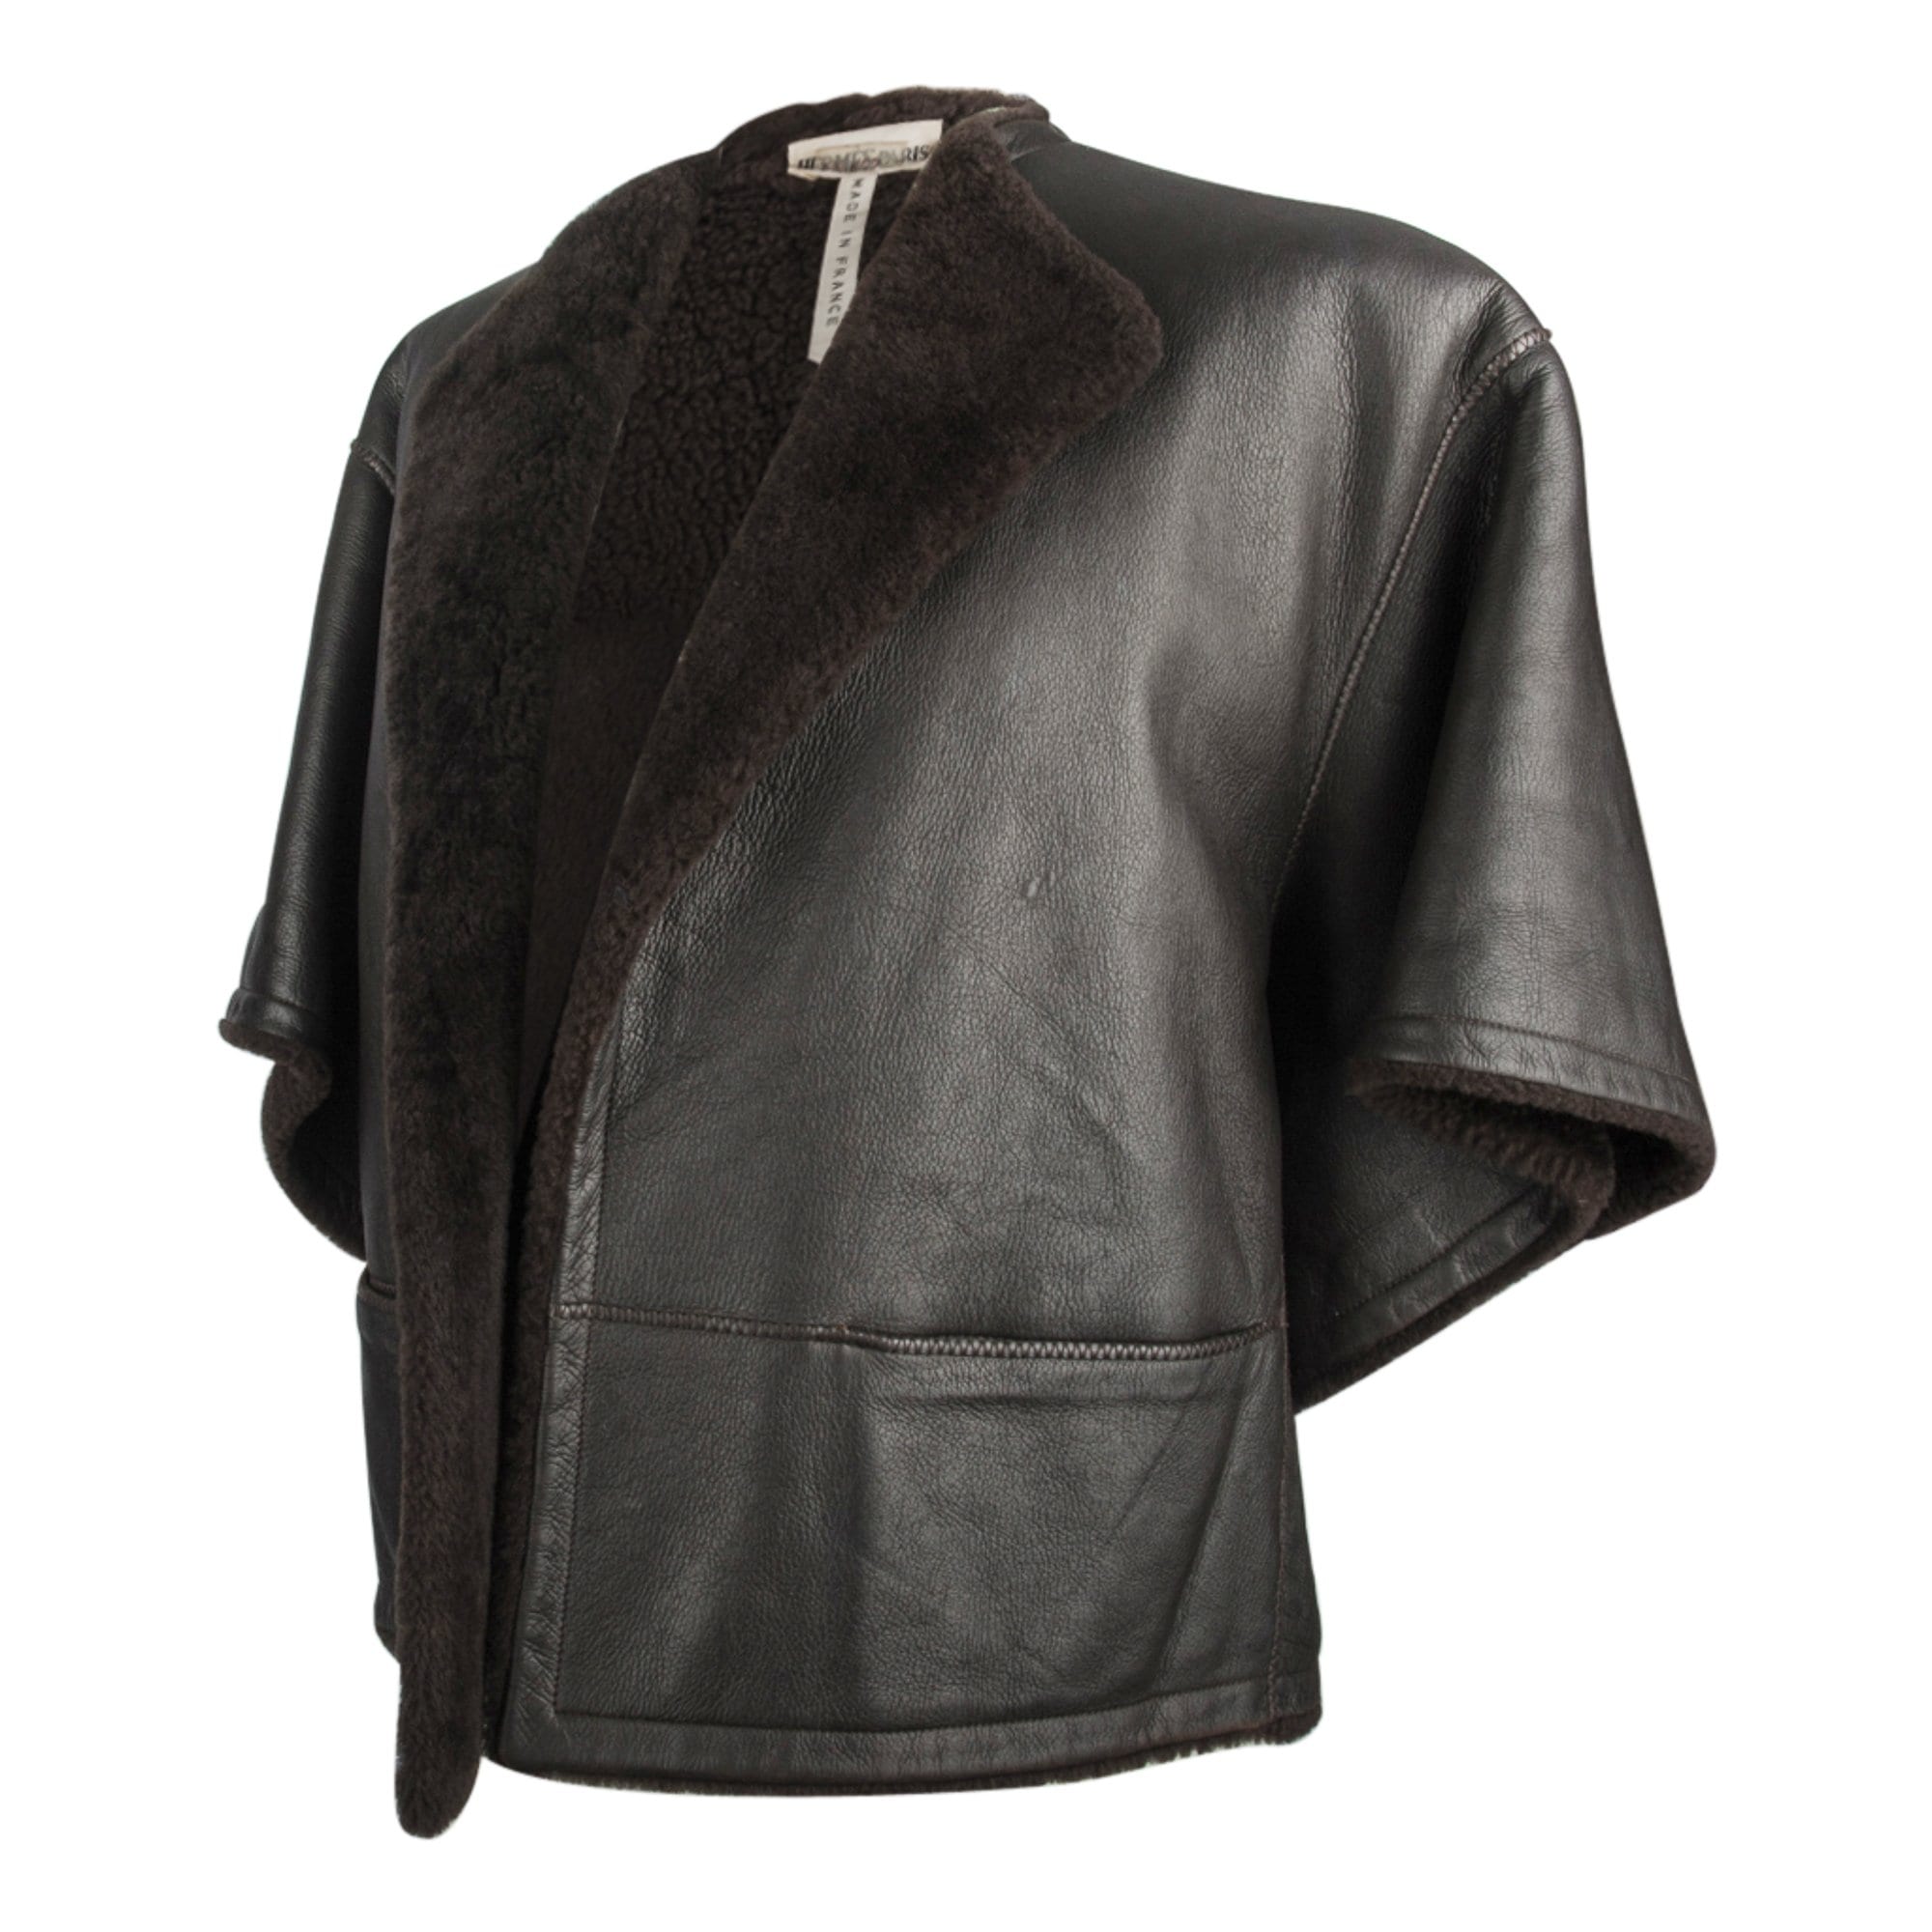 Hermes Jacket Dark Brown Striking Shearling 3/4 Sleeve 38 / 4 – Mightychic